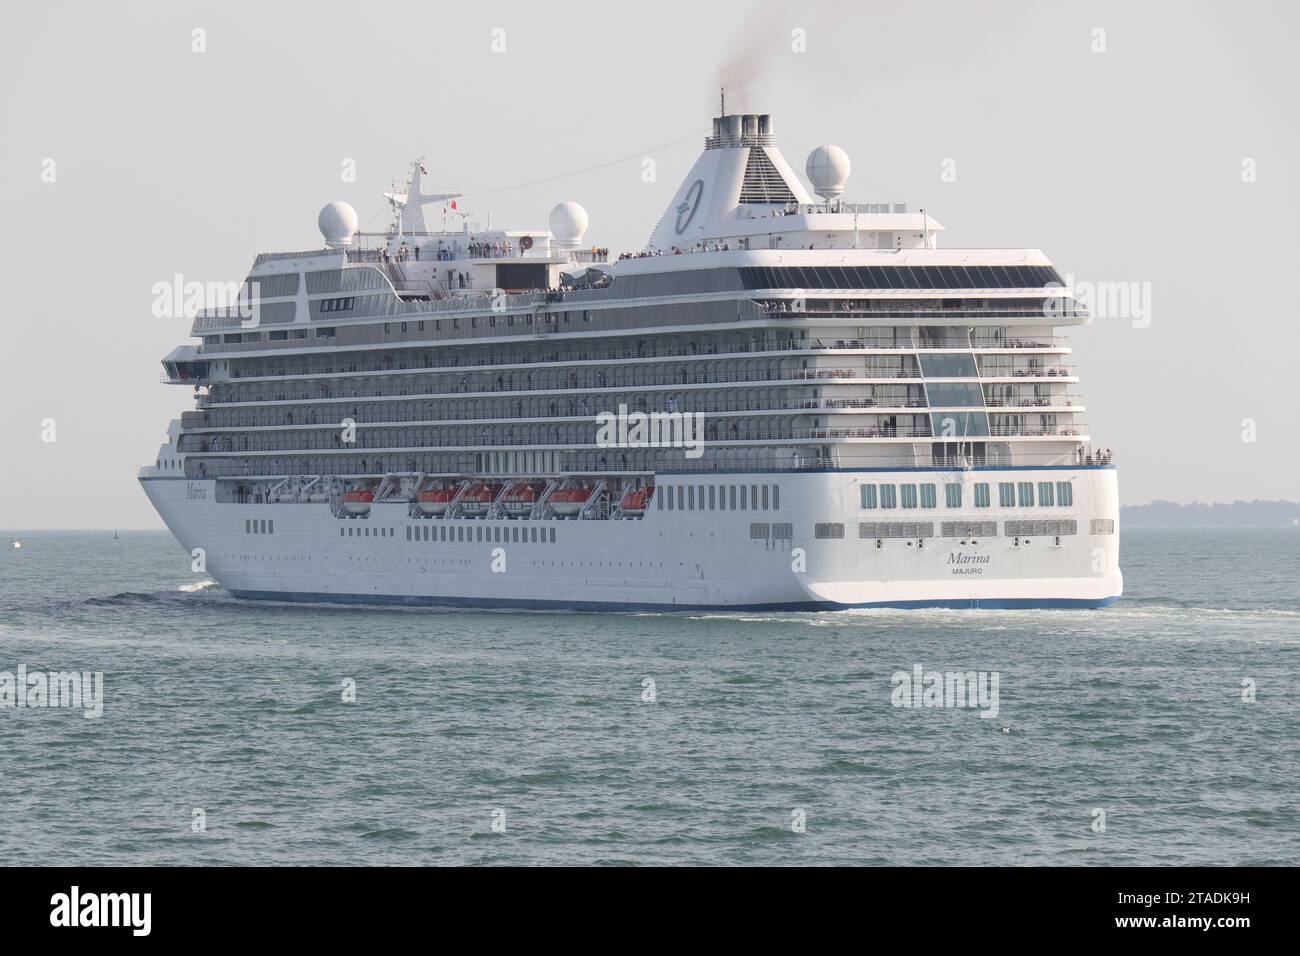 Le navire à passagers MS MARINA d'Oceania Cruises se dirige vers le Solent après avoir quitté le terminal du port international de Portsmouth Banque D'Images